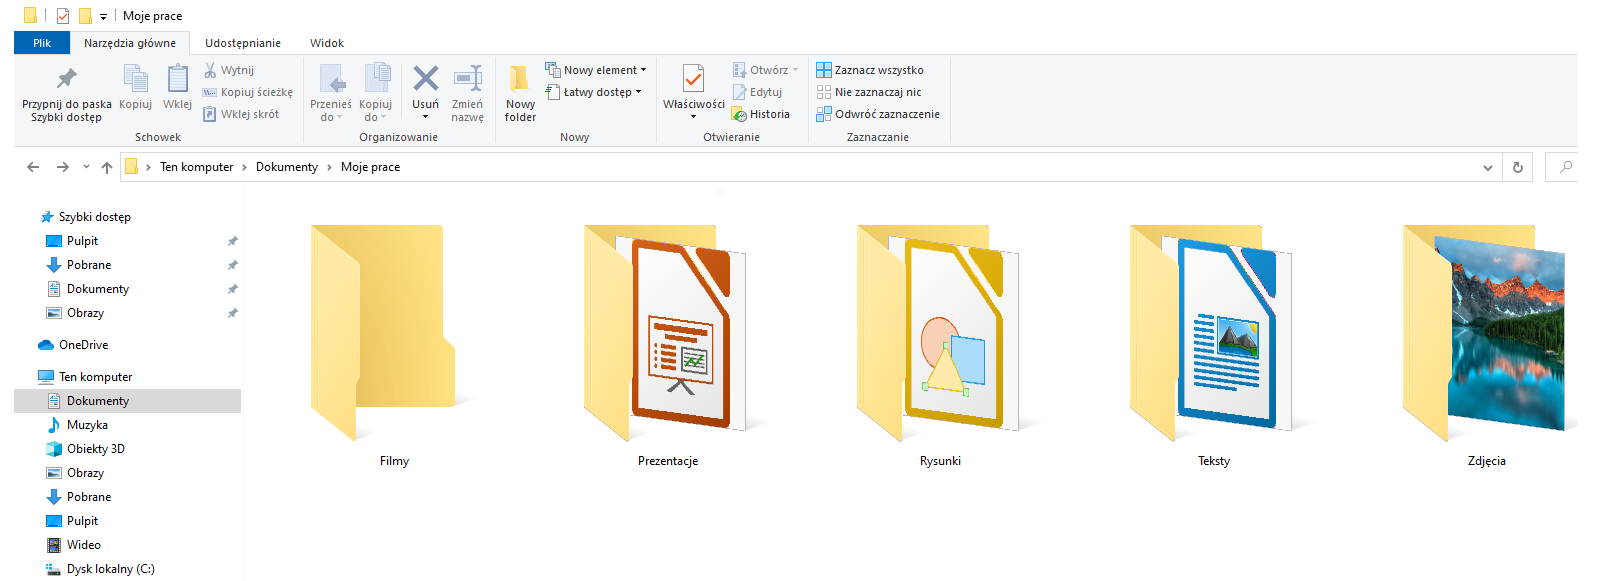 Zrzut ekranu Eksploratora plików z otwartym folderem "Moje prace" znajdującym się w "Dokumentach" w "Ten Komputer". W prawym górnym rogu znajduje się nazwa bieżącego otwartego folderu "Moje prace", poniżej znajdują się zakładki "Pliki", "Narzędzia główne", "Udostępnianie", "Widok". W zakładce "Narzędzia główne" eksploratora plików znajdują się narzędzia: w sekcji "Schowek" - "Przypnij do paska; Szybki dostęp", "Kopiuj", "Wklej", "Wytnij", "Kopiuj ścieżkę", "Wklej skrót". W sekcji "Organizowanie" - "Przenieś do", "Kopiuj do" "Usuń", "Zmień nazwę". W sekcji "Nowy" - "Nowy folder", "Nowy element", "Łatwy dostęp". W sekcji "Otwieranie" - "Właściwości", "Otwórz", "Edytuj", "Historia". W sekcji "Zaznaczanie" - "Zaznacz wszystko", "Nie zaznaczaj nic", "Odwróć zaznaczenie". W drzewie folderów po lewej stronie znajdują się "Szybki dostęp" - "Pulpit", "Pobrane", "Dokumenty", "Obrazy", "OneDrive" oraz "Ten komputer" - "Dokumenty", "Muzyka", "Obiekty 3D", "Obrazy", "Pulpit", "Wideo", "Dysk lokalny (C:)". W folderze "Moje prace" znajduje się folder "Filmy", "Prezentacje", "Rysunki", "Teksty", "Zdjęcia".